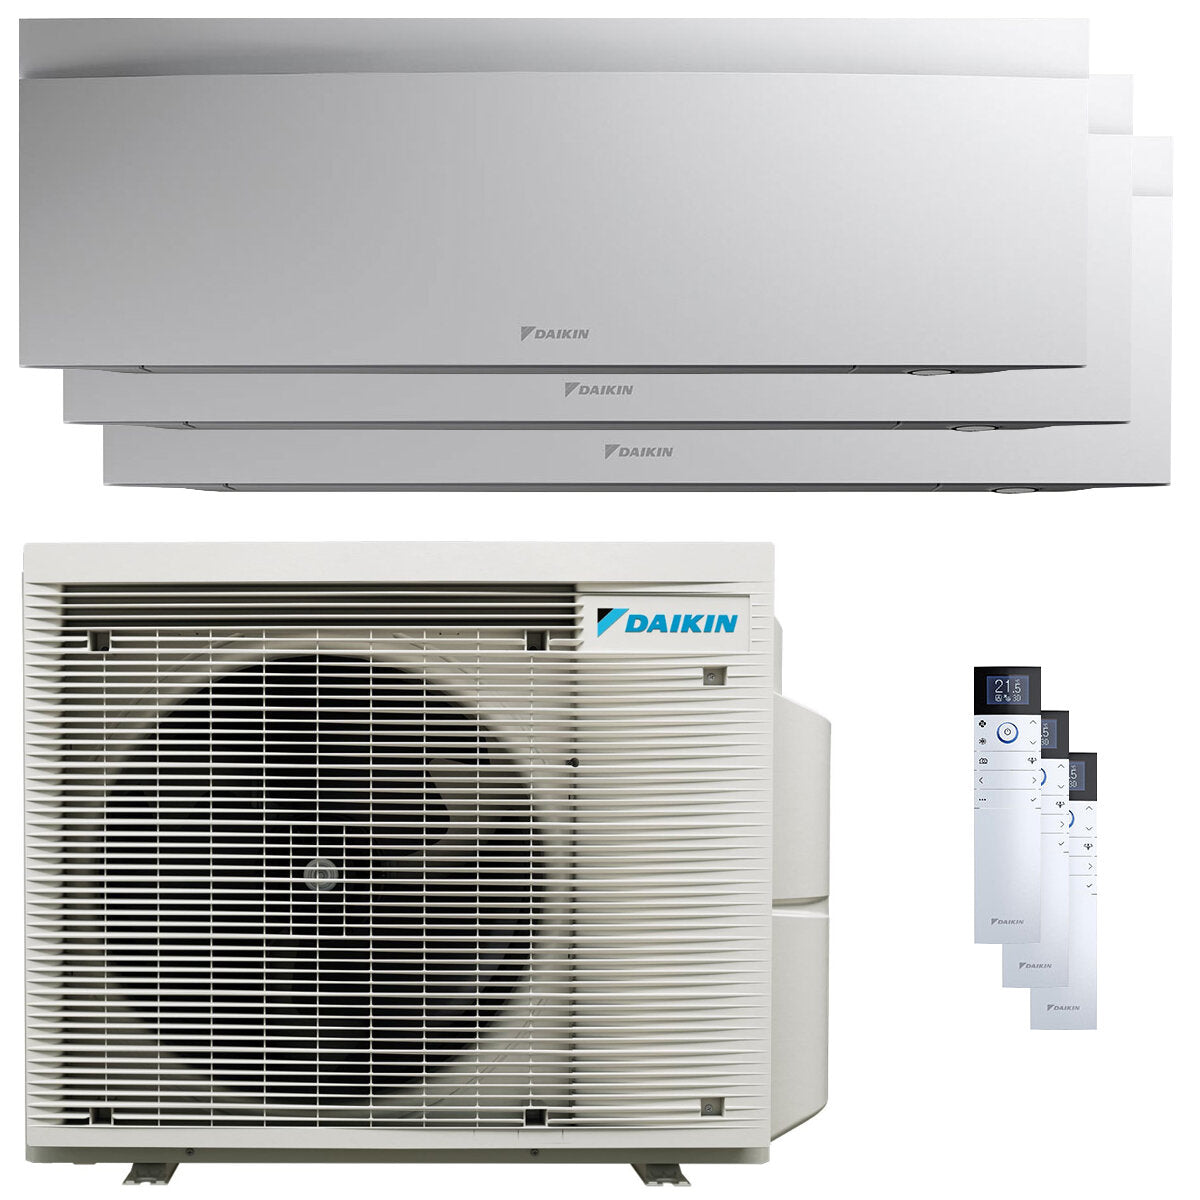 Daikin Emura 3 trial split air conditioner 7000+9000+18000 BTU inverter A+ wifi outdoor unit 6.8 kW White